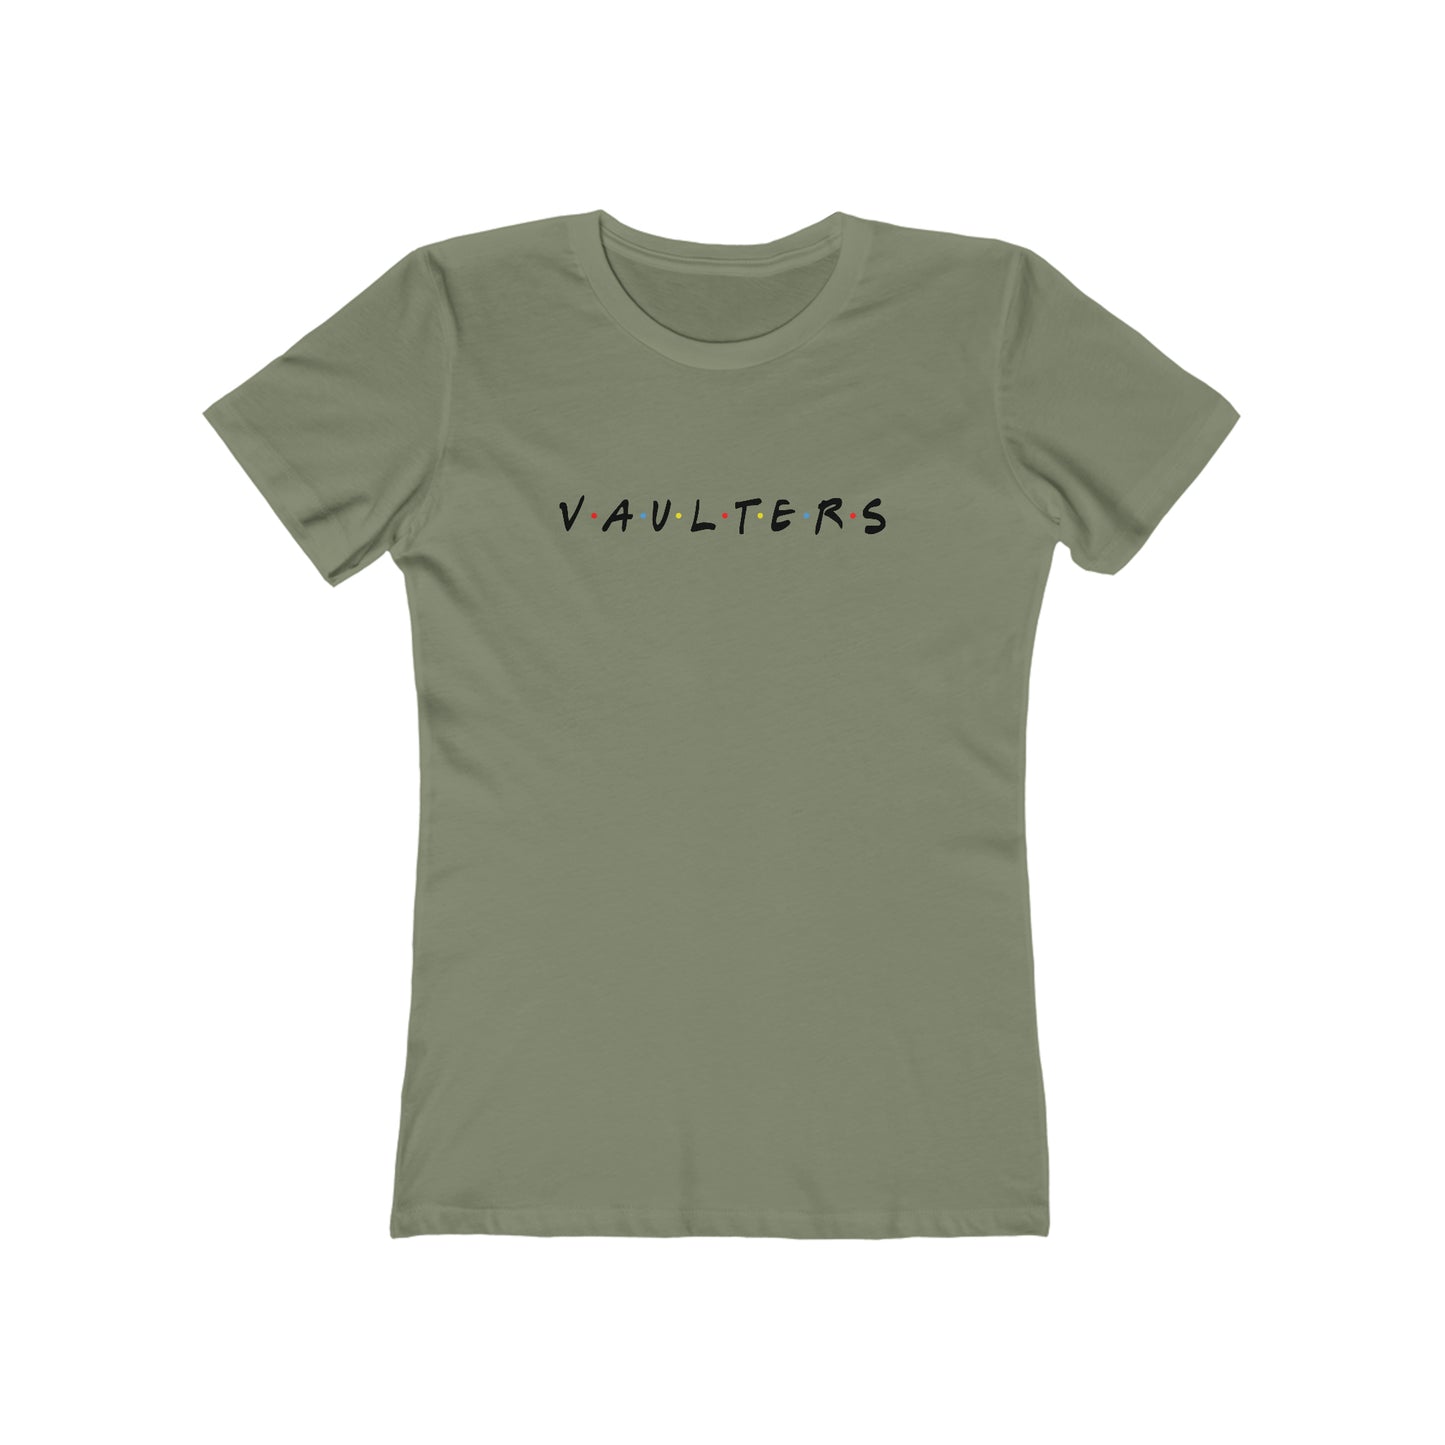 Vaulters - Women's Premium Tee